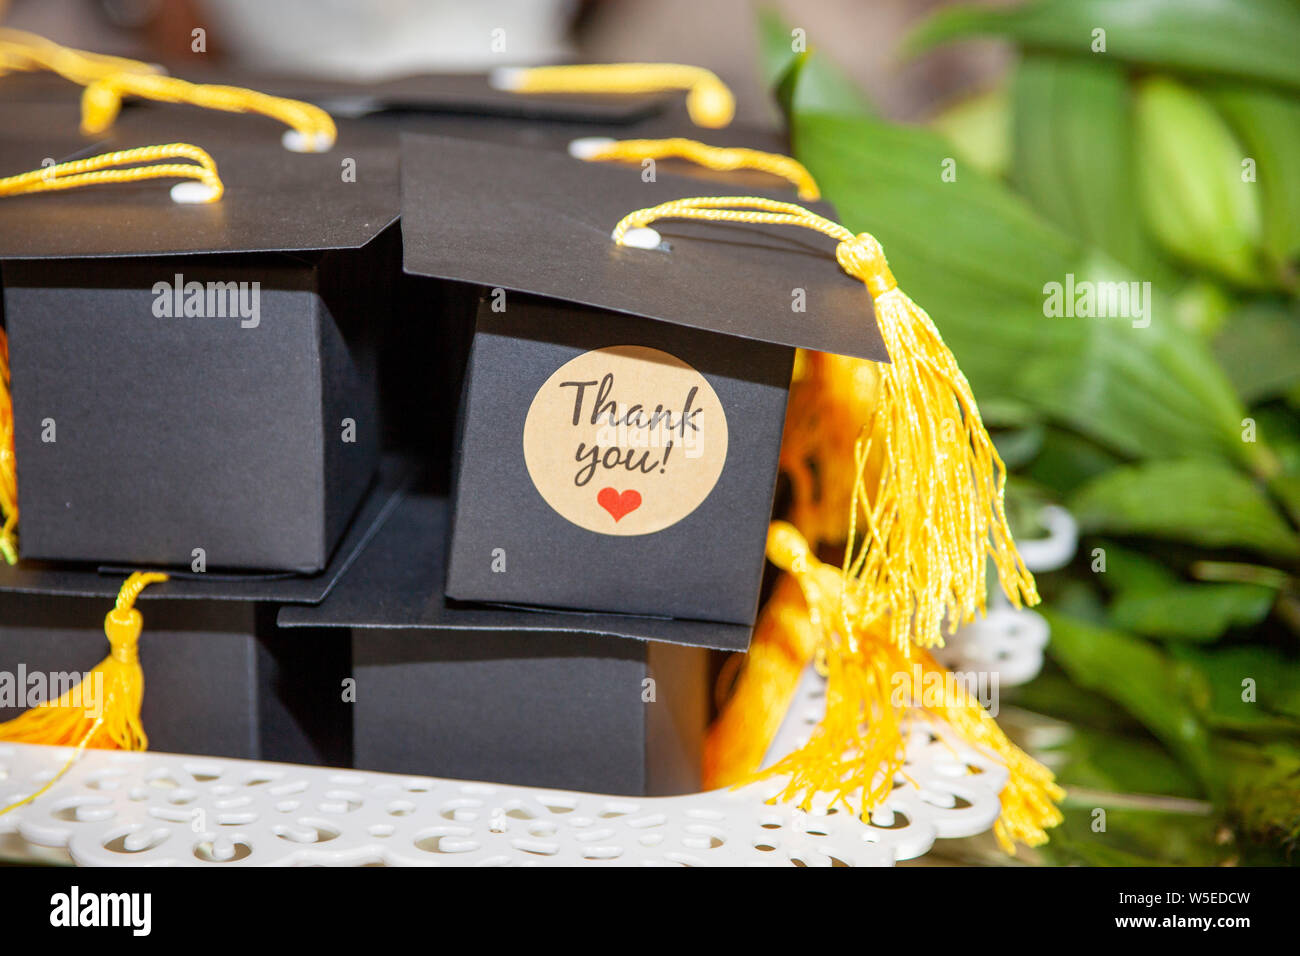 Thank you gift graduation boxxes Stock Photo